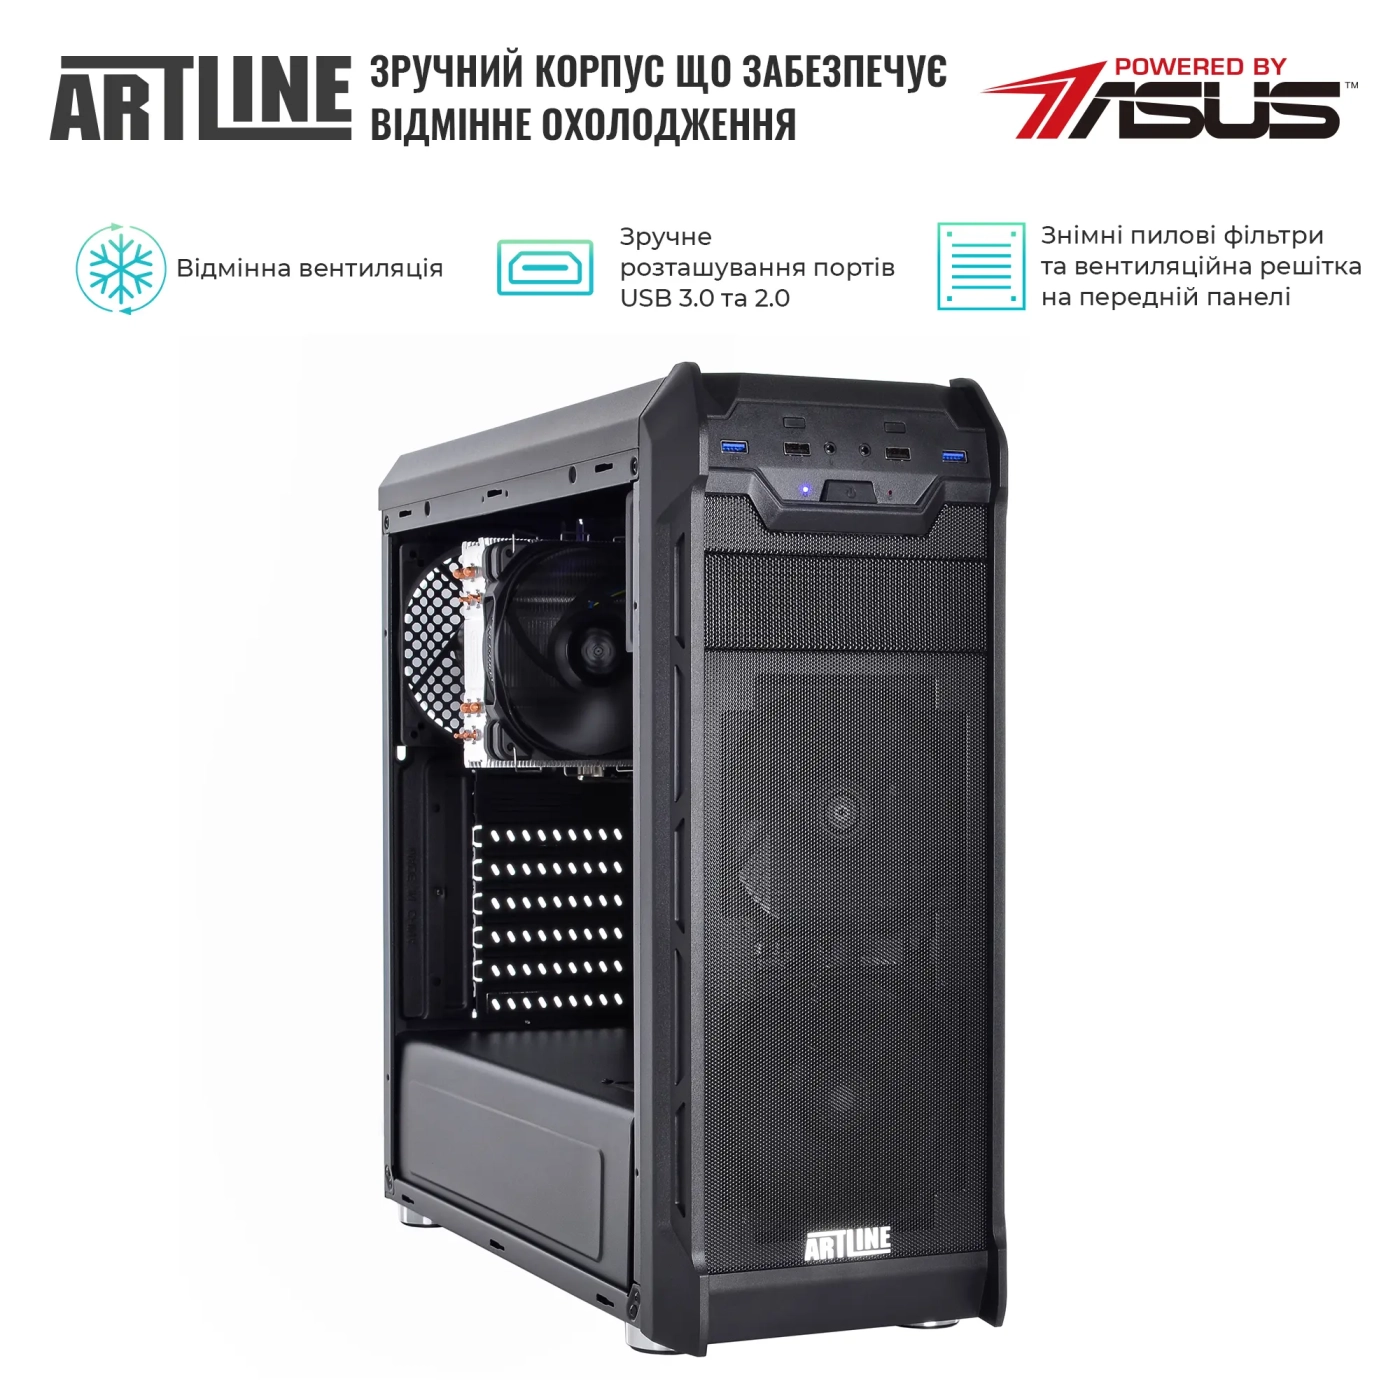 Купить Сервер ARTLINE Business T25 (T25v45) - фото 3